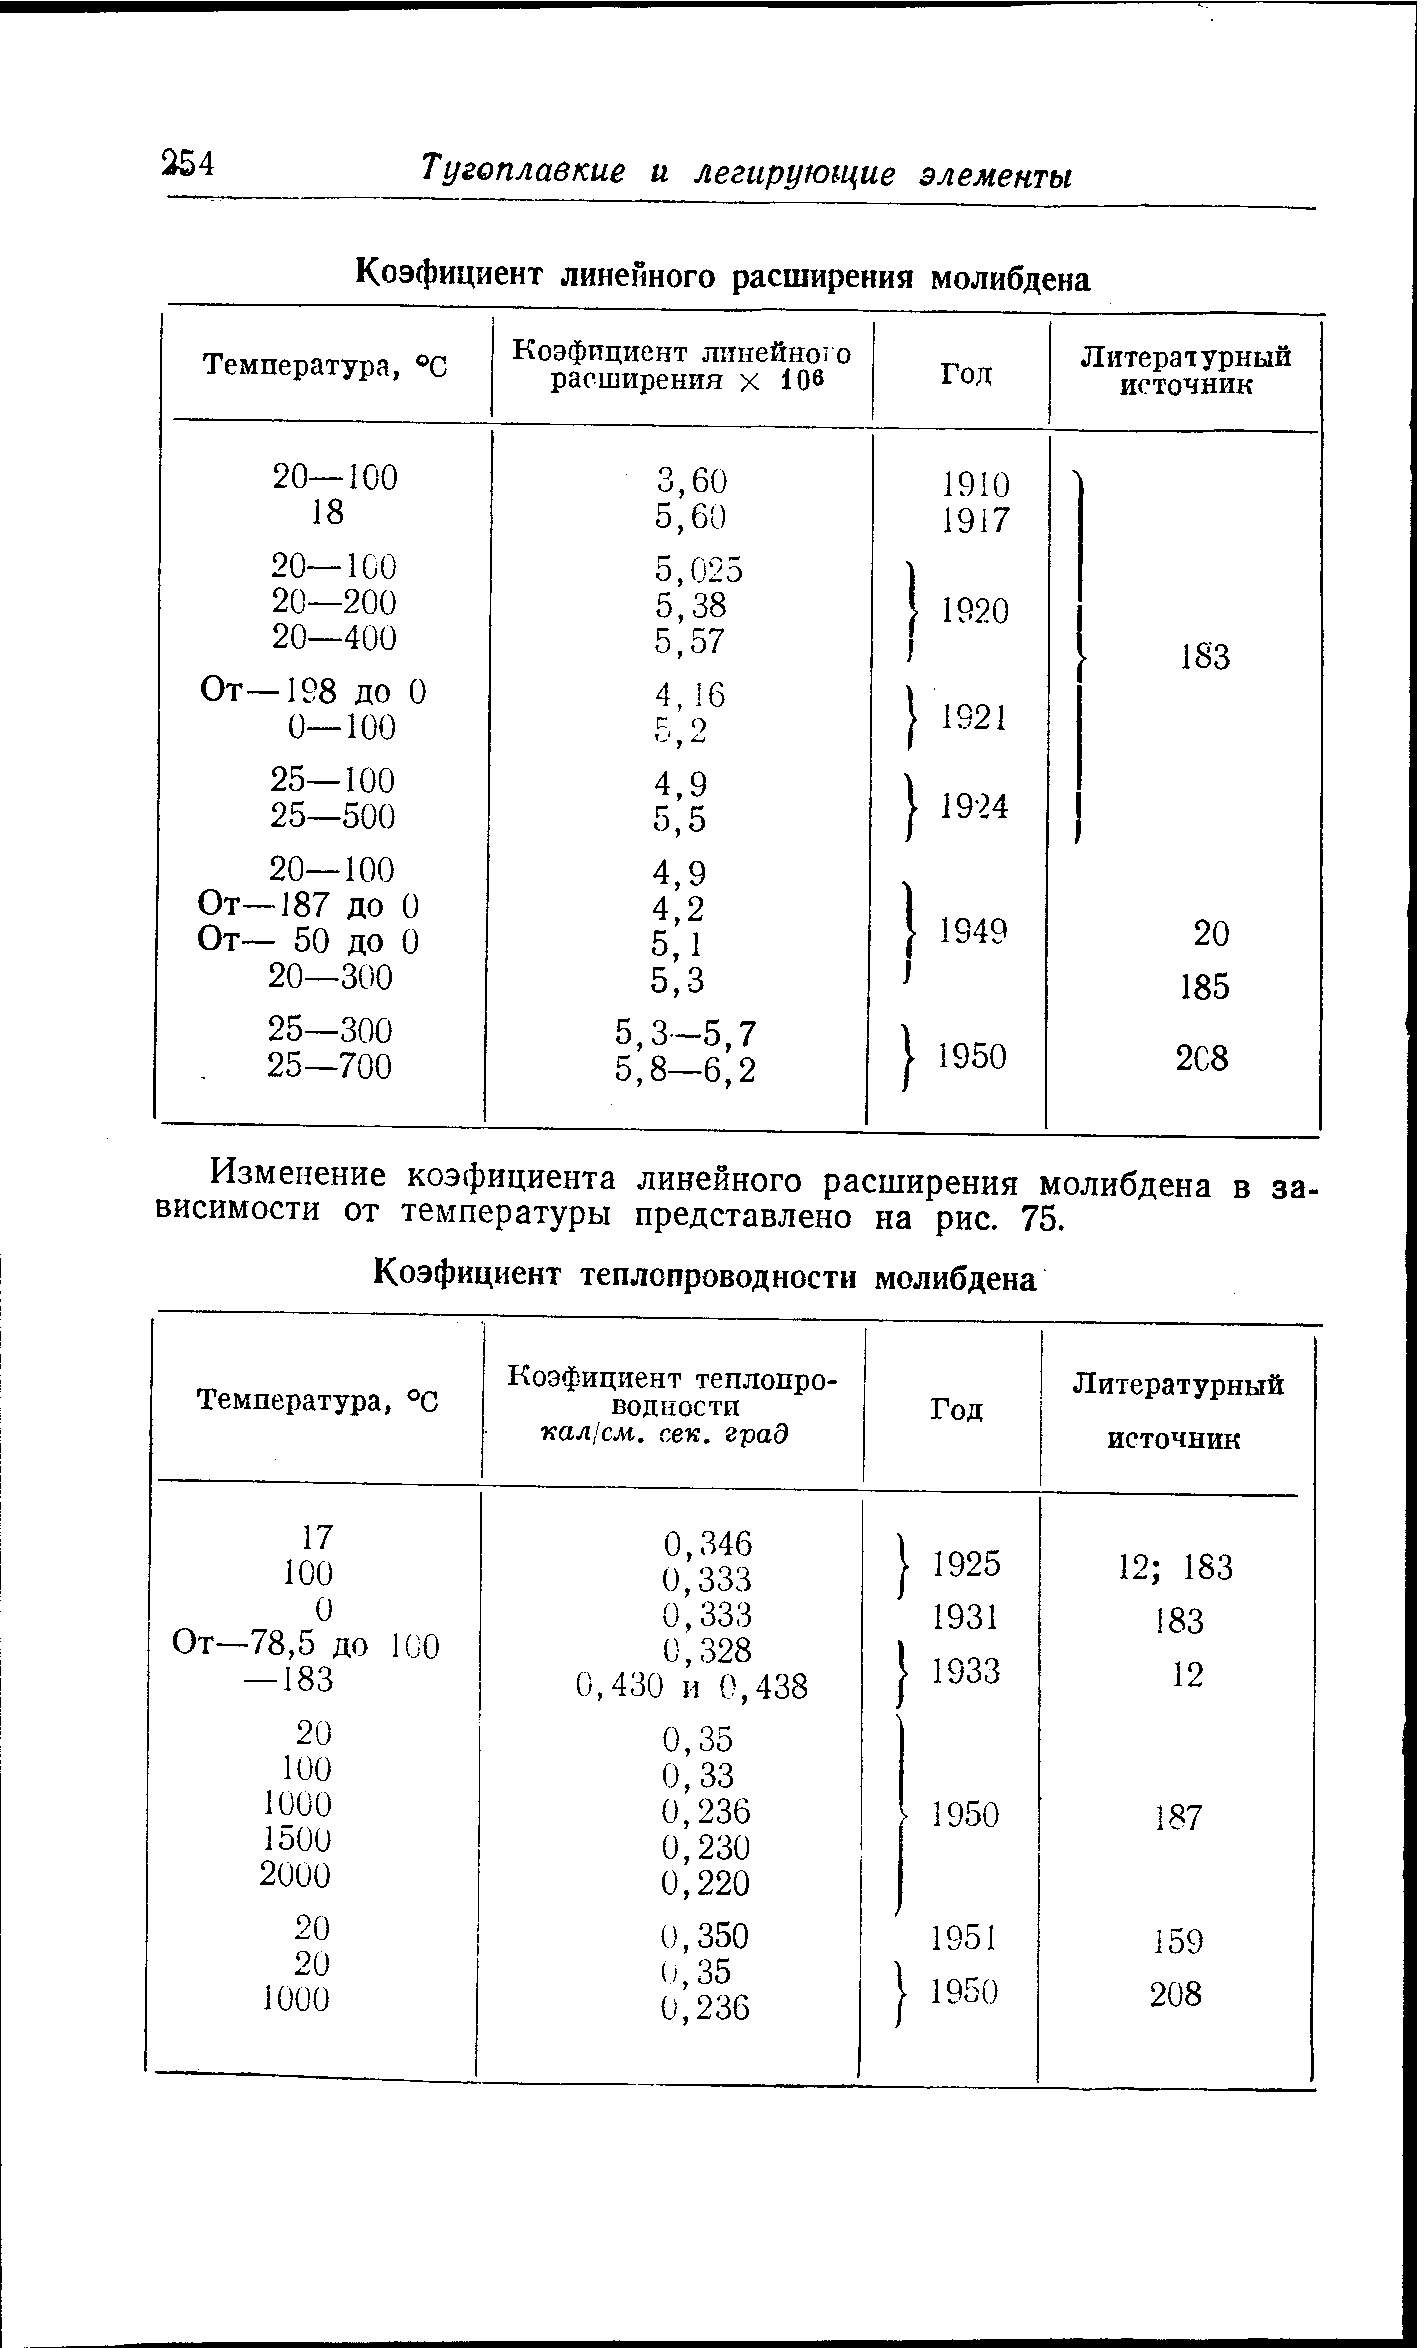 Изменение коэфициента линейного расширения молибдена в зависимости от температуры представлено на рис. 75.